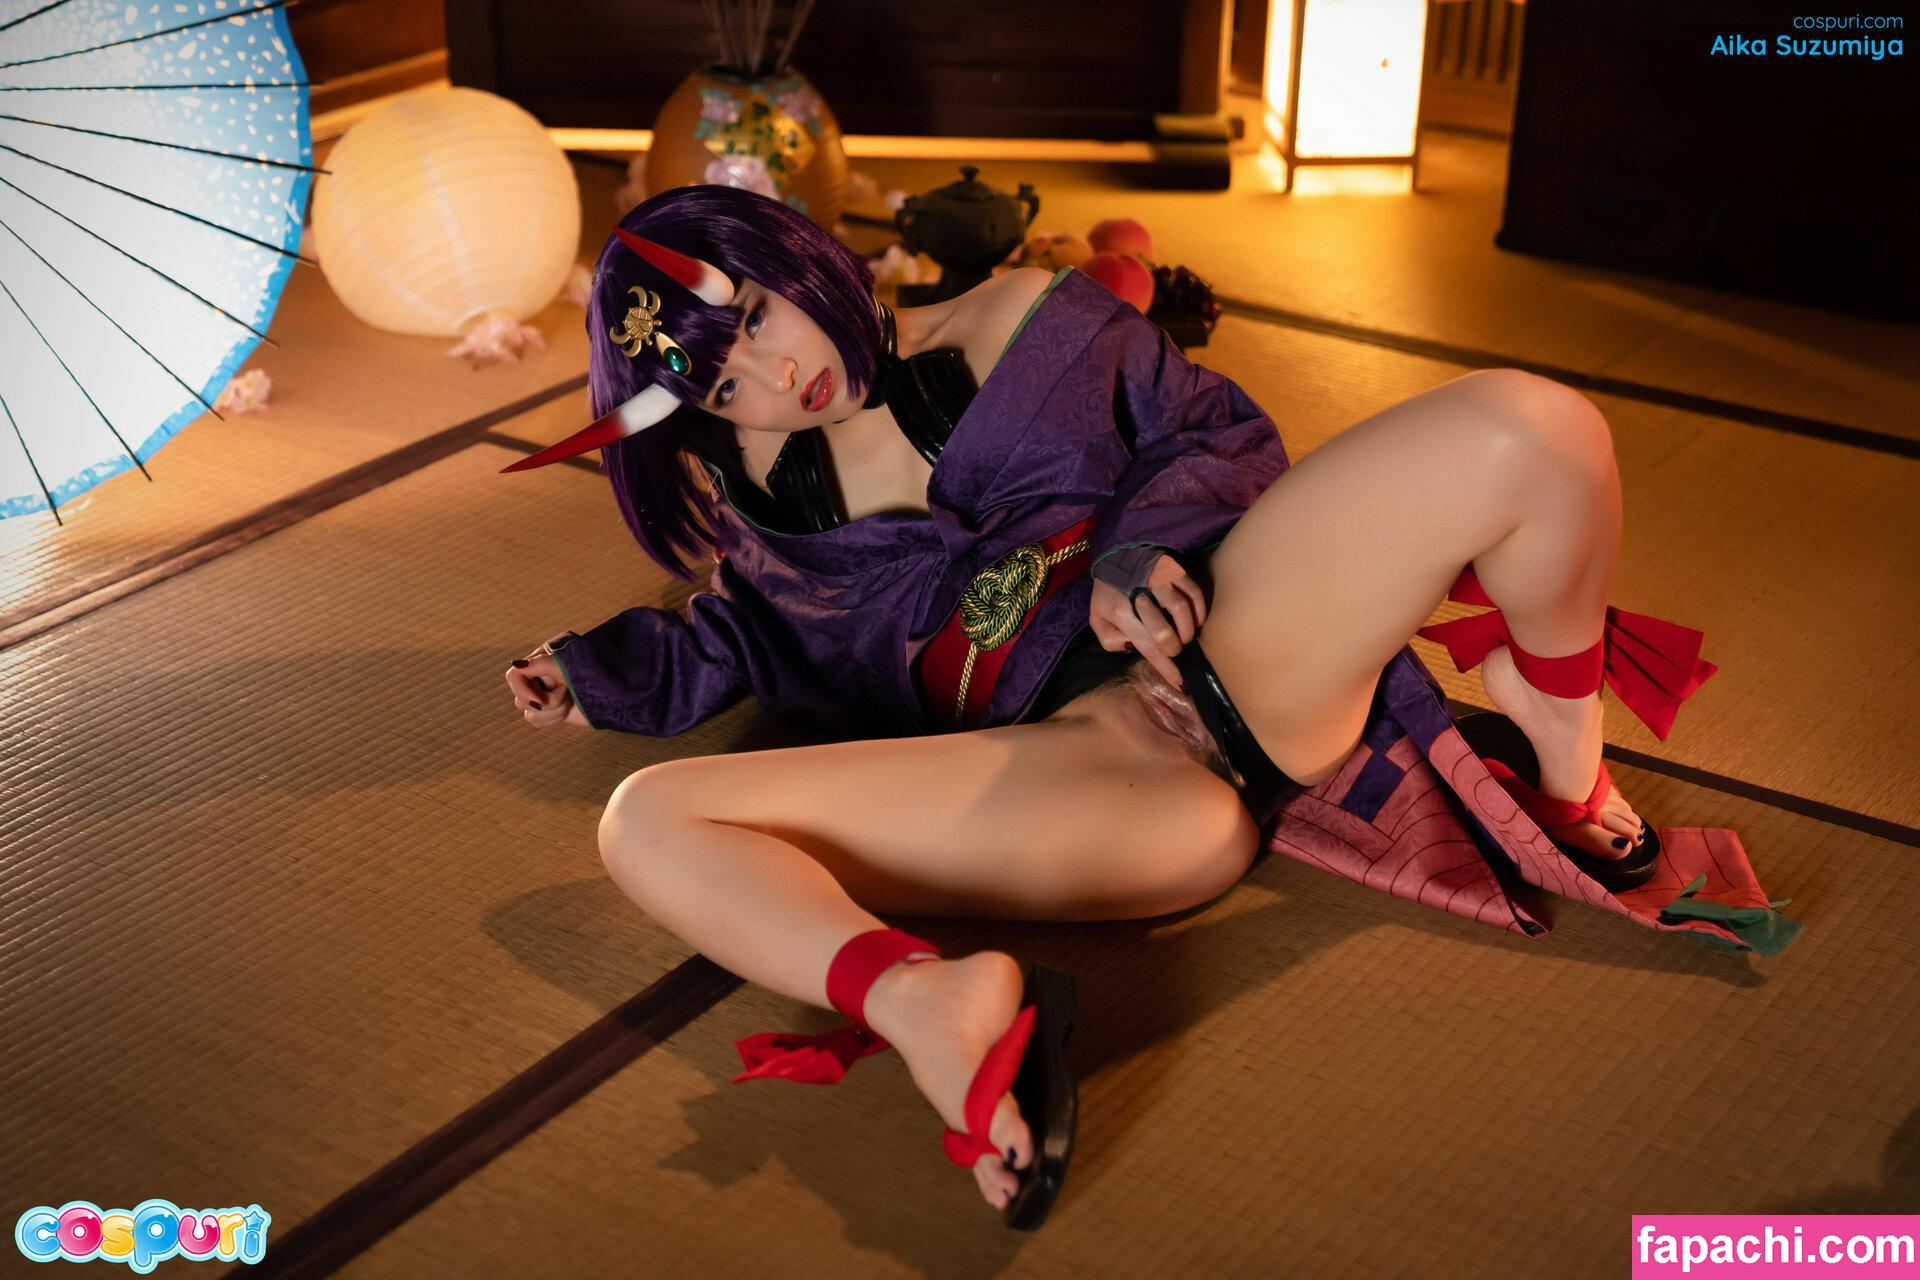 Aika Suzumiya leaked nude photo #0004 from OnlyFans/Patreon